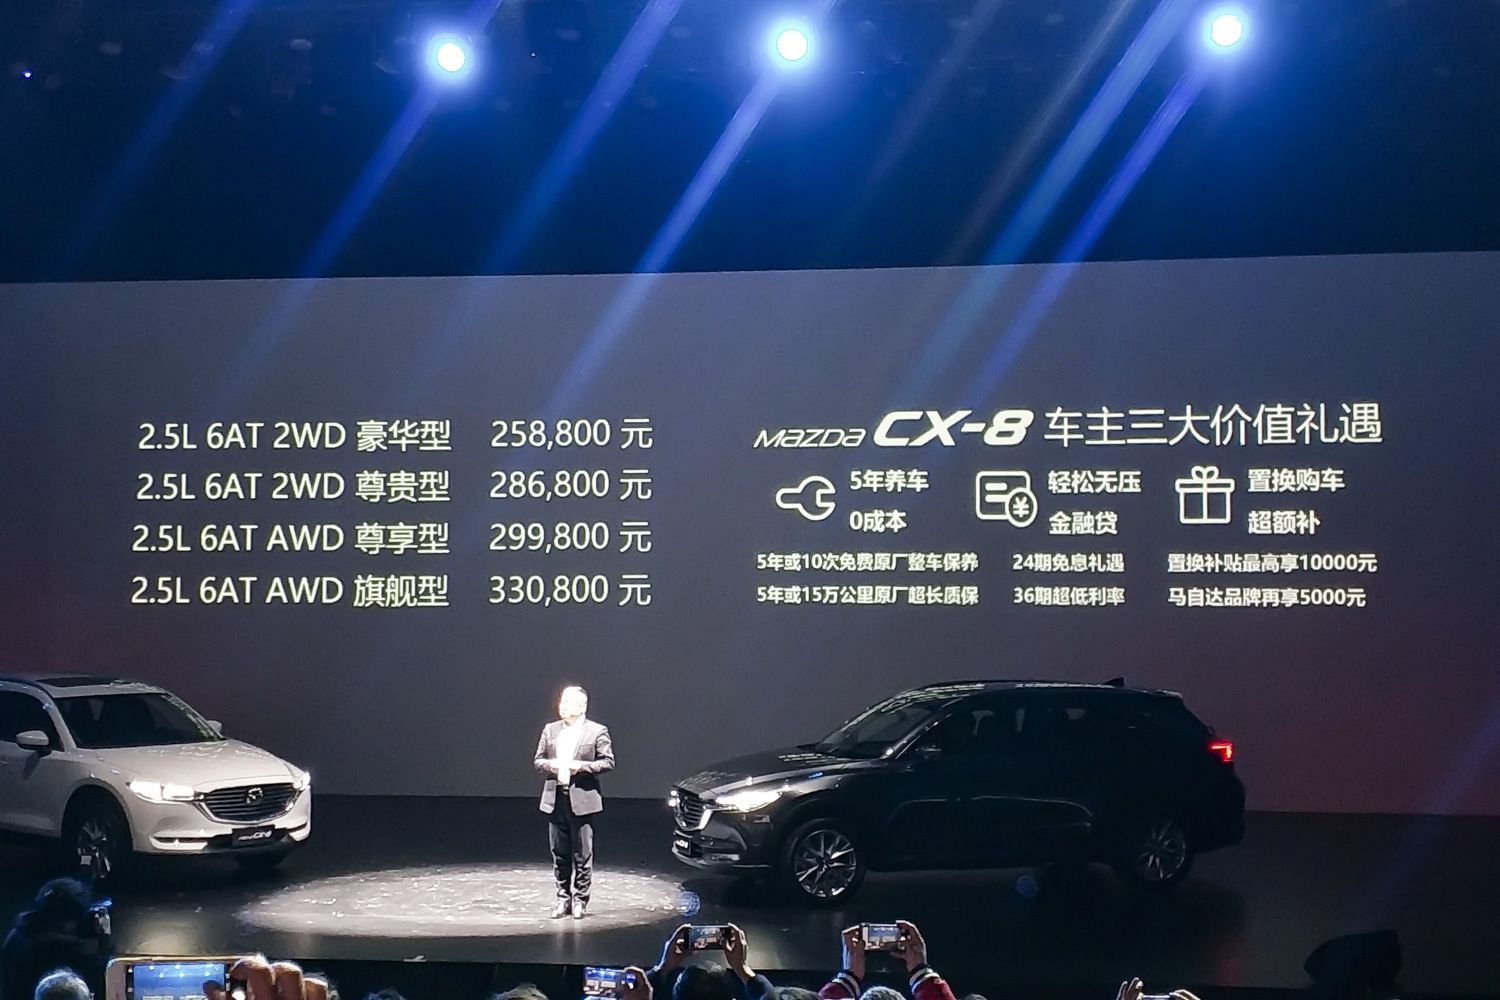 推荐两驱尊贵型 长安马自达CX-8购车手册